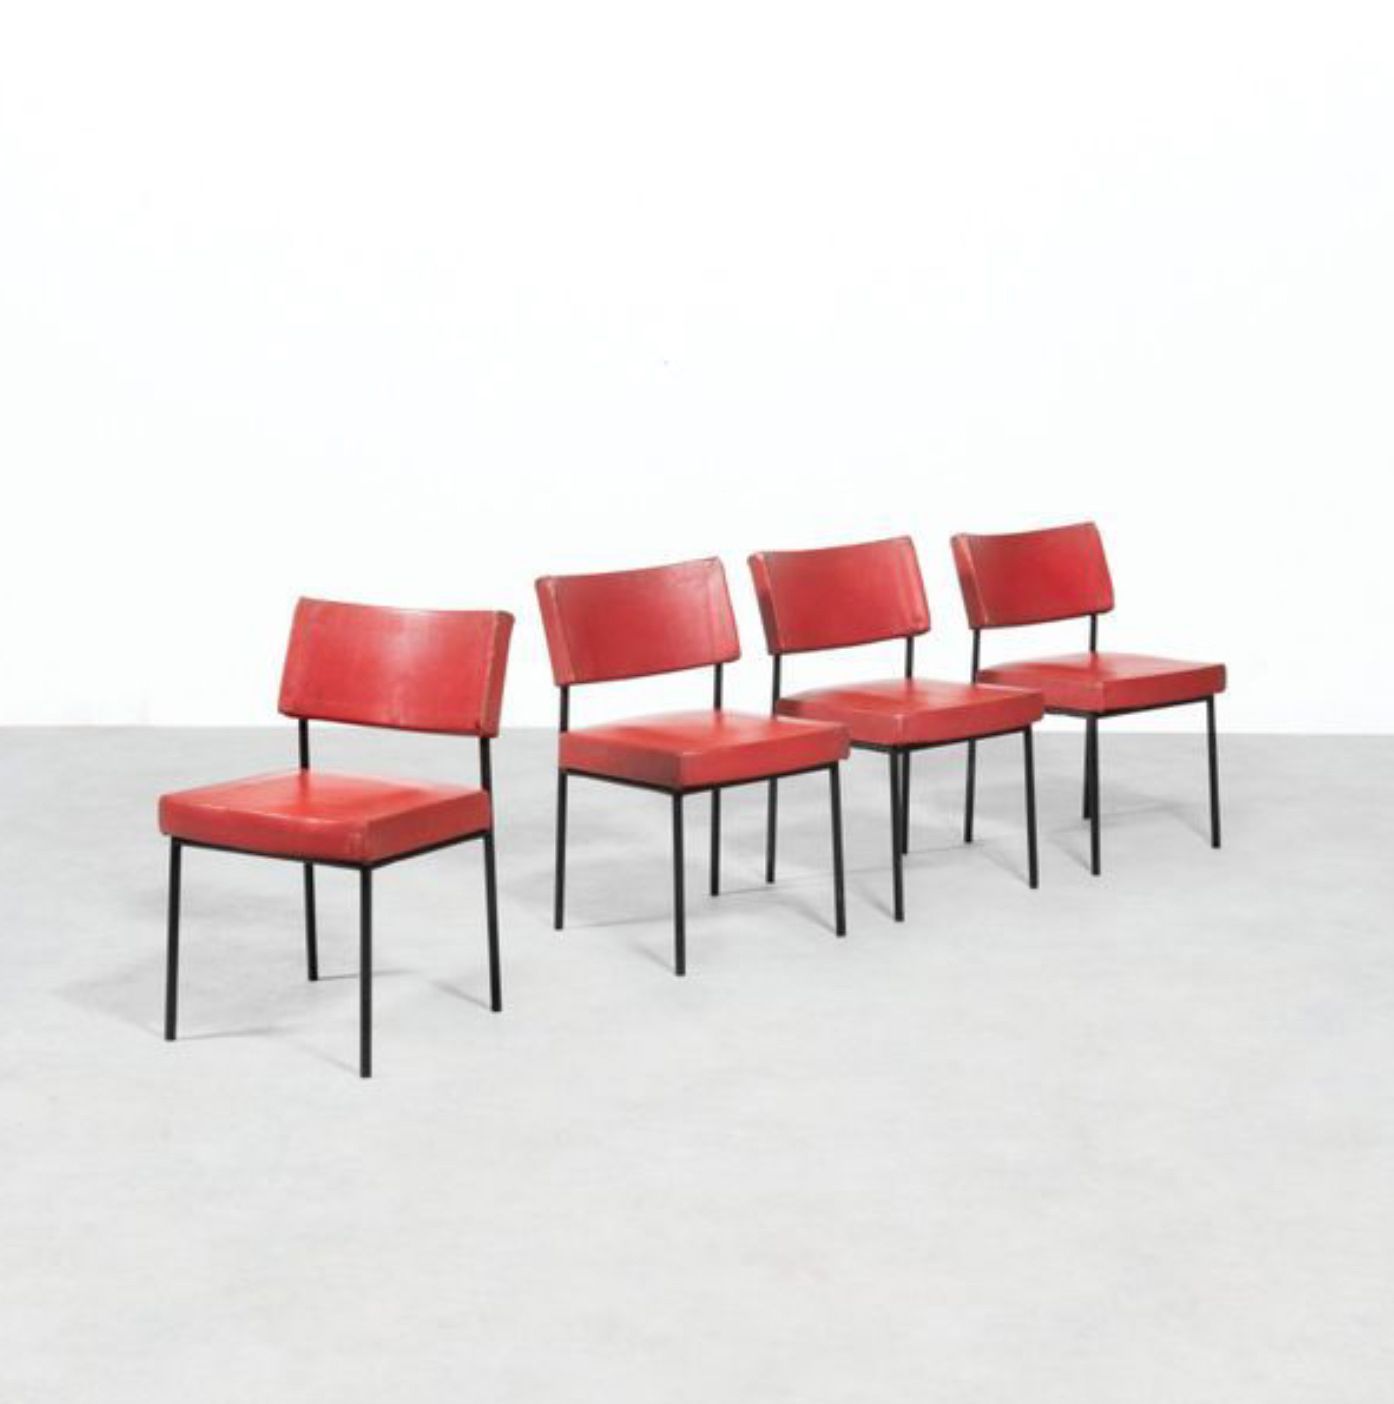 JOSEPH-ANDRÉ MOTTE (1925-2015) Suite aus vier Stühlen Modell "764". 

Schwarz la&hellip;